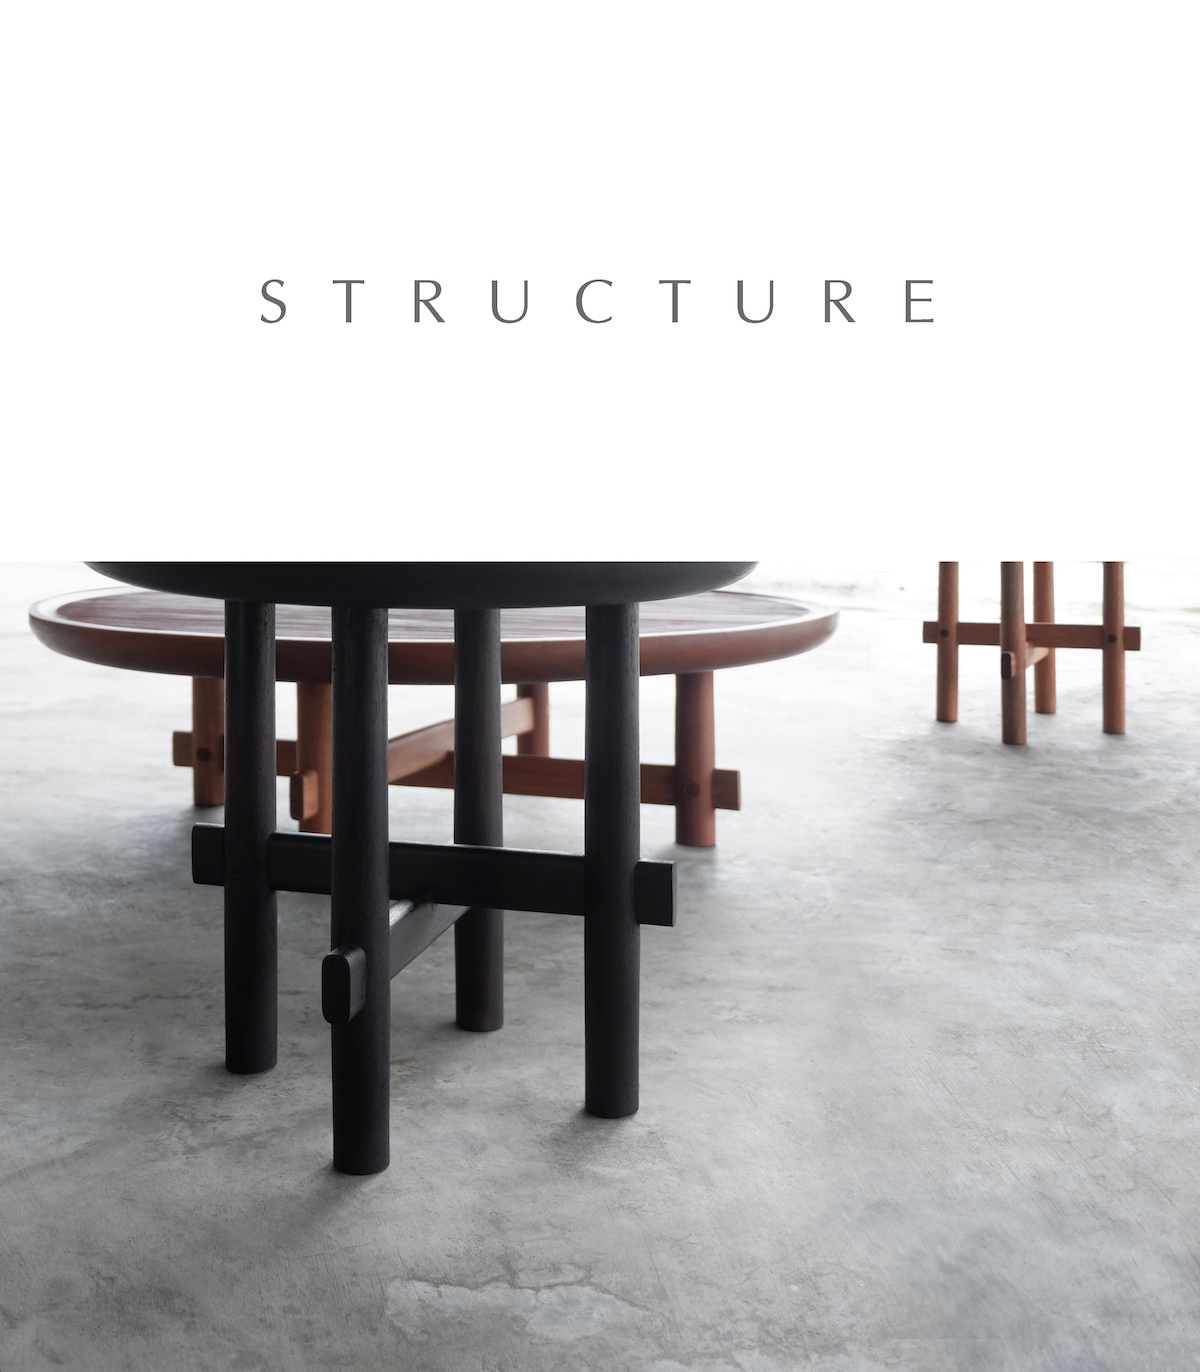 Câu chuyện văn hóa đằng sau chiếc bàn lấy cảm hứng từ cấu trúc cột kèo